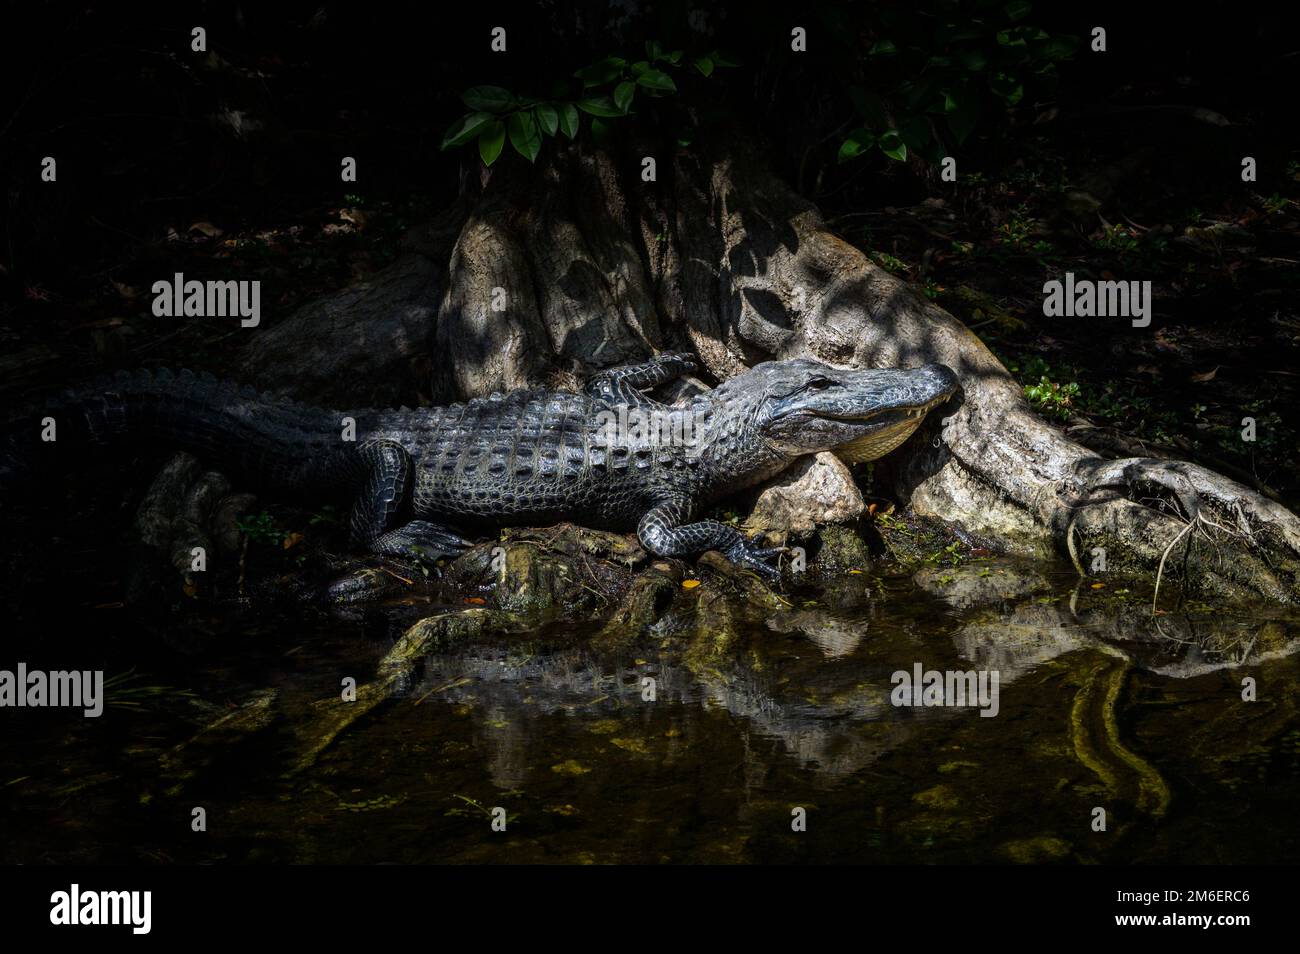 Amerikanischer Alligator (Alligator mississippiensis), der auf Zypressenwurzeln im Sumpf liegt, Big Cypress National Reserve, Florida, Vereinigte Staaten. Stockfoto